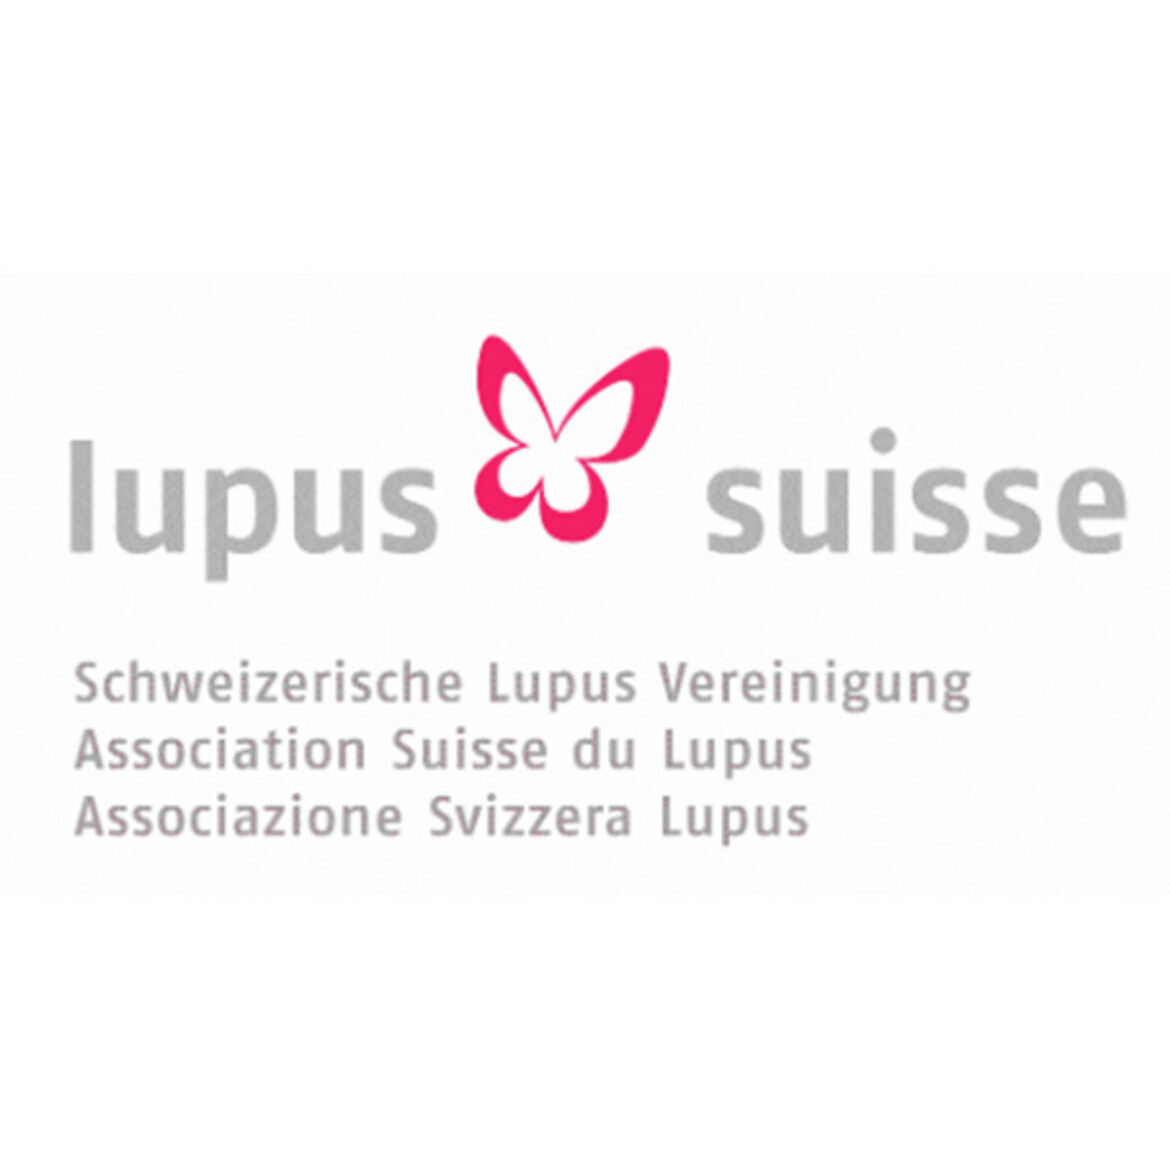 lupus suisse